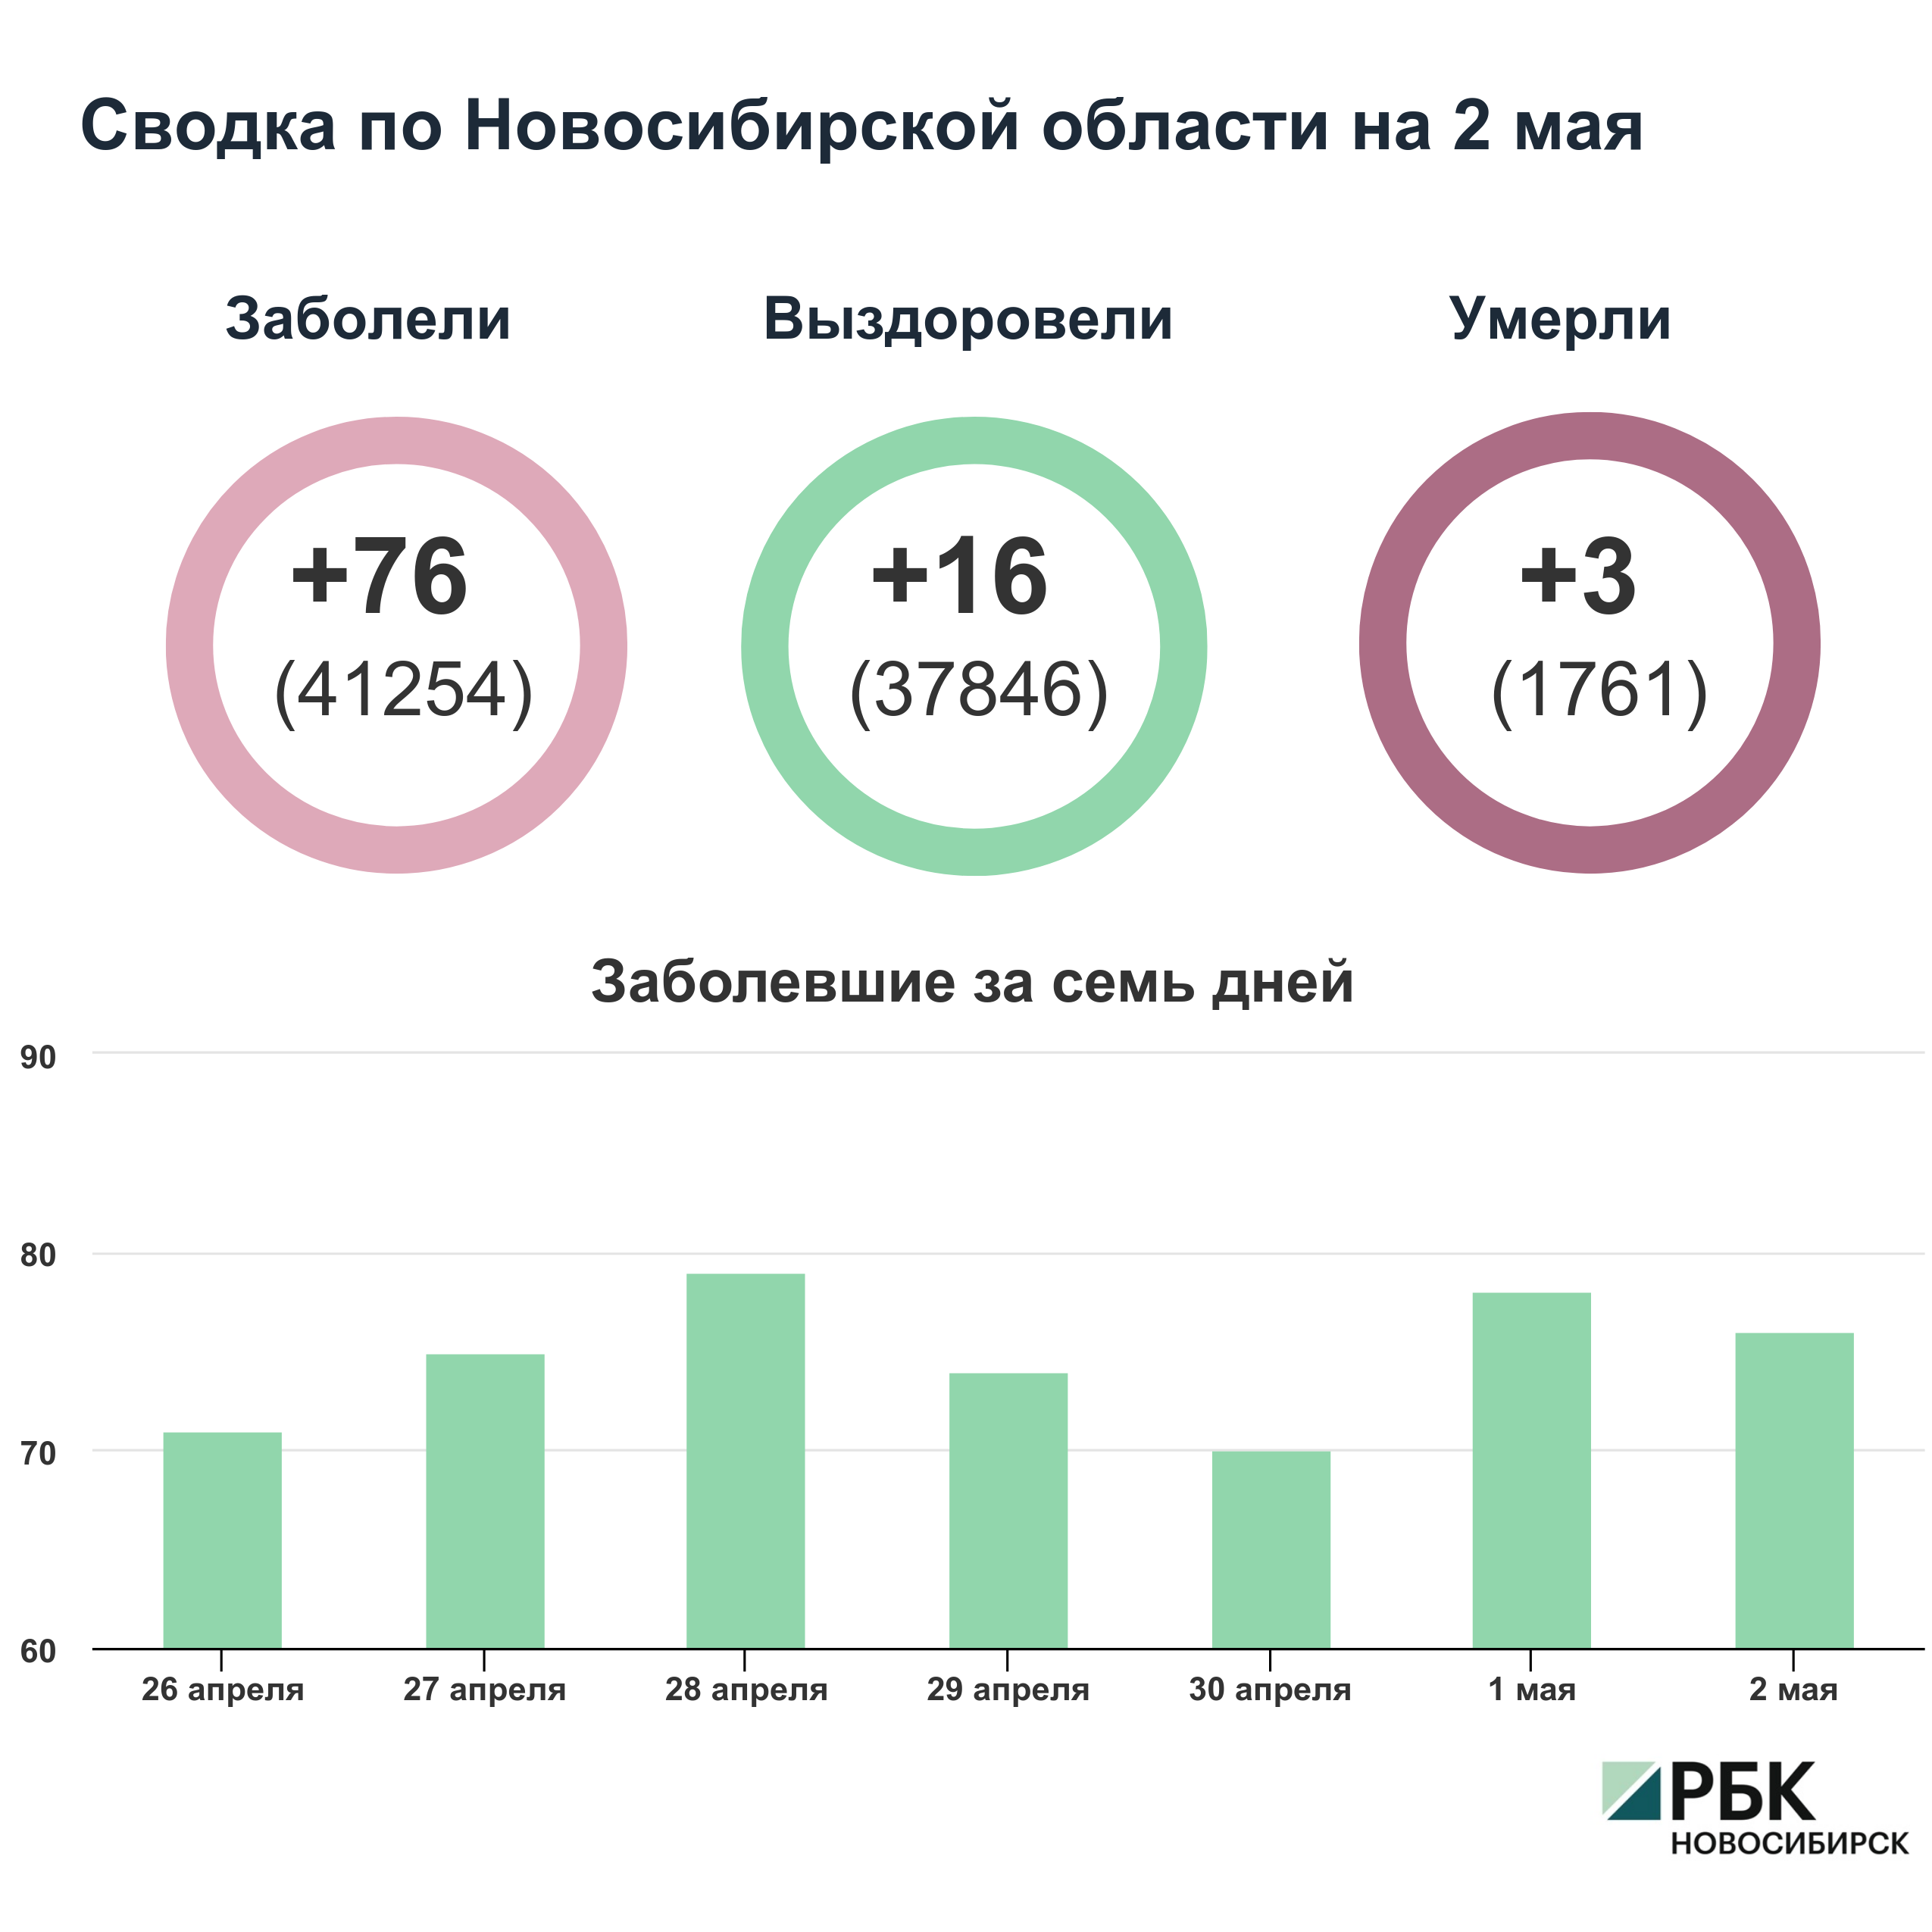 Коронавирус в Новосибирске: сводка на 2 мая